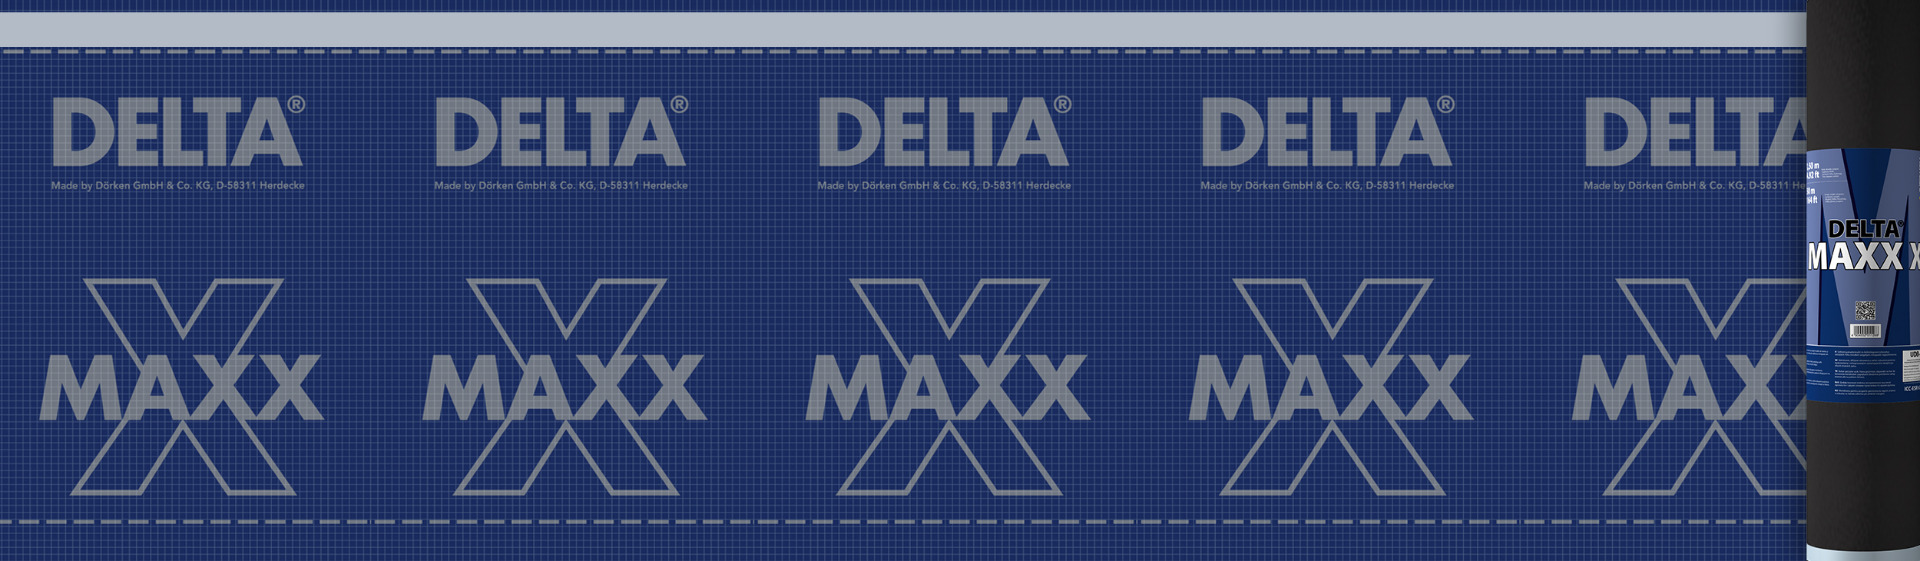 Delta Maxx X